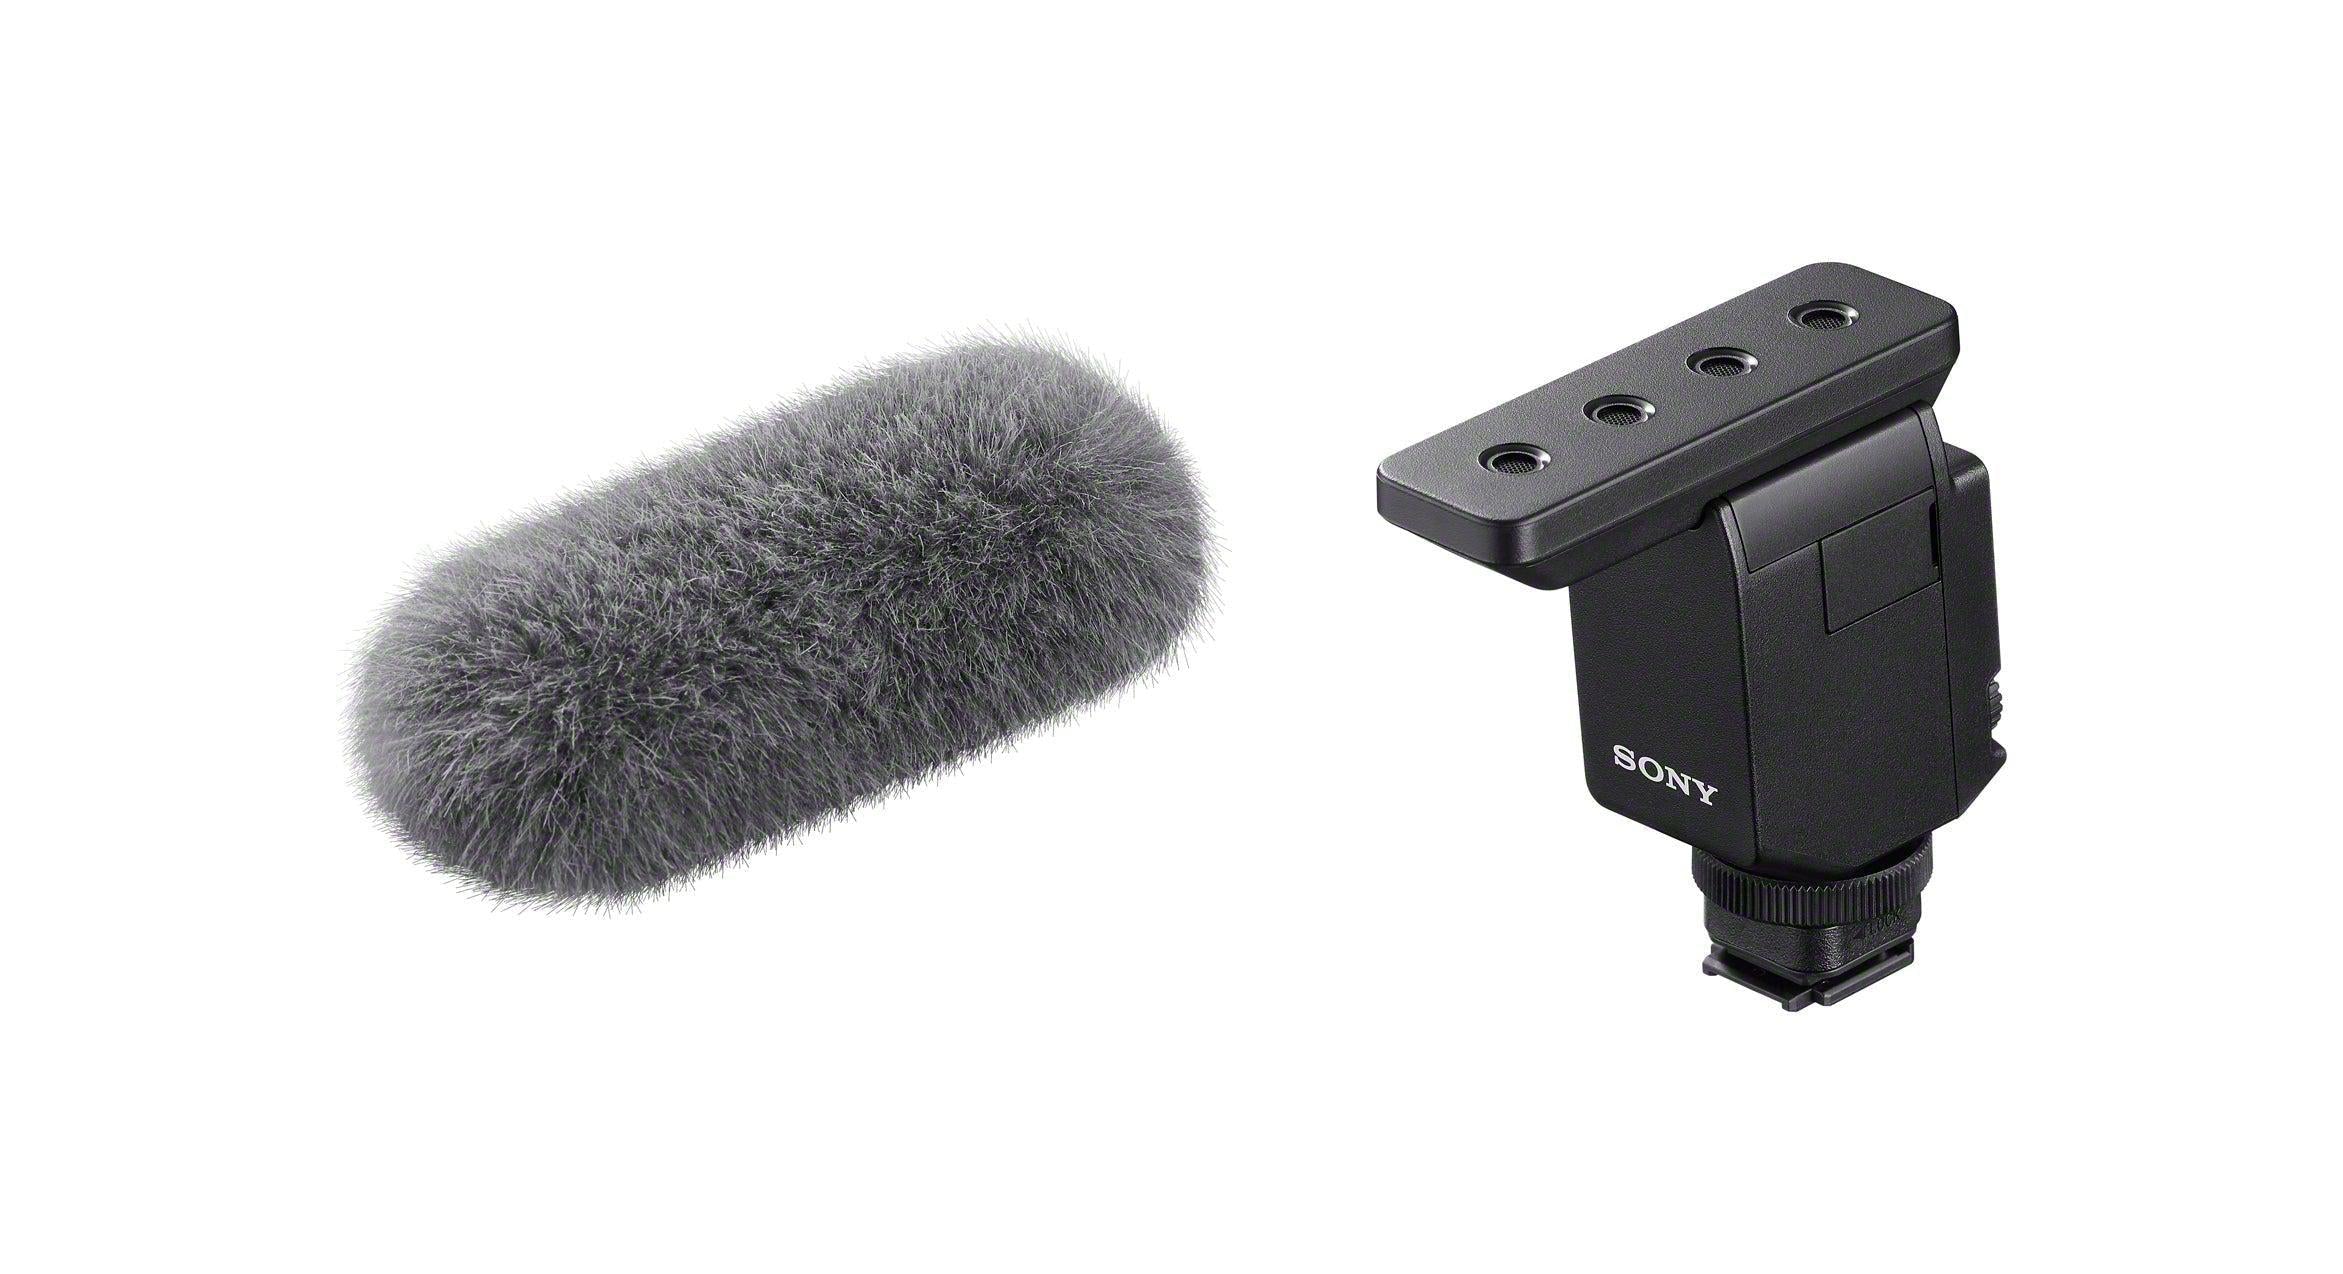 Microfono Shotgun wireless ECMB10 - Garanzia Sony Italia 2 anni - Cine Sud è da 47 anni sul mercato! 0305200 -ssummer23